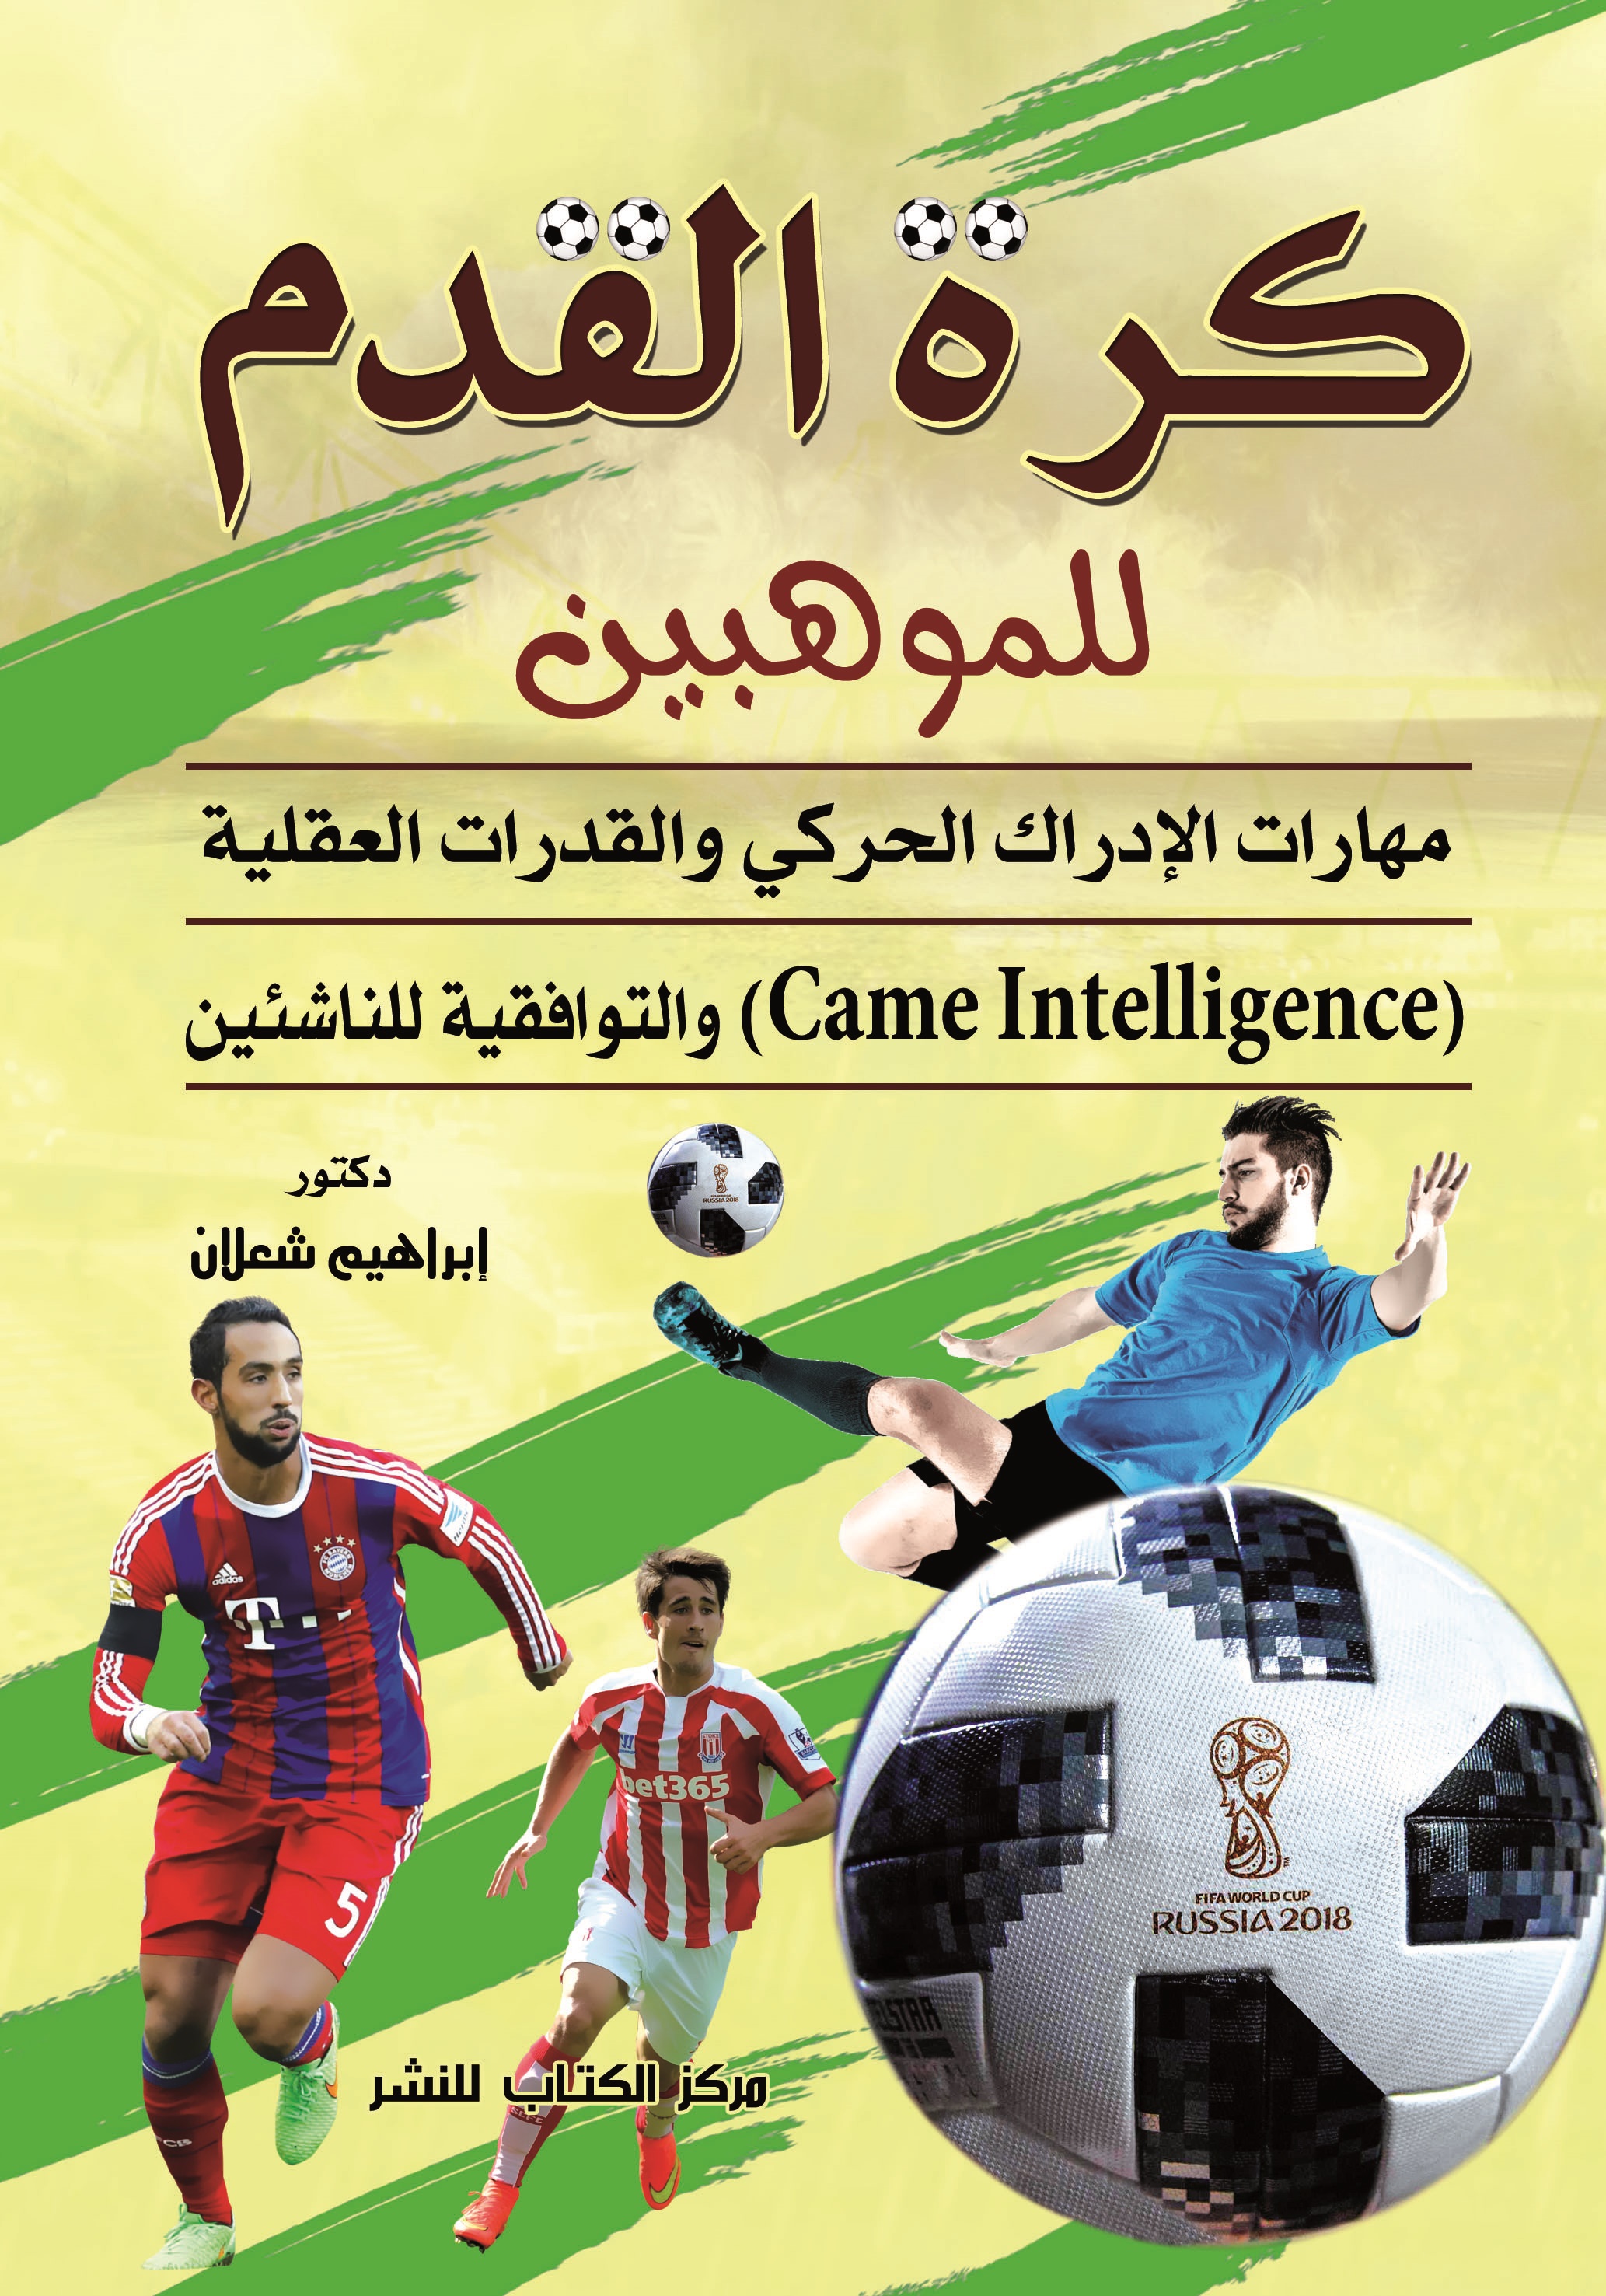 كرة القدم للموهبين "مهارات الادراك الحركي والقدرات العقلية والتوافقية للناشئين"